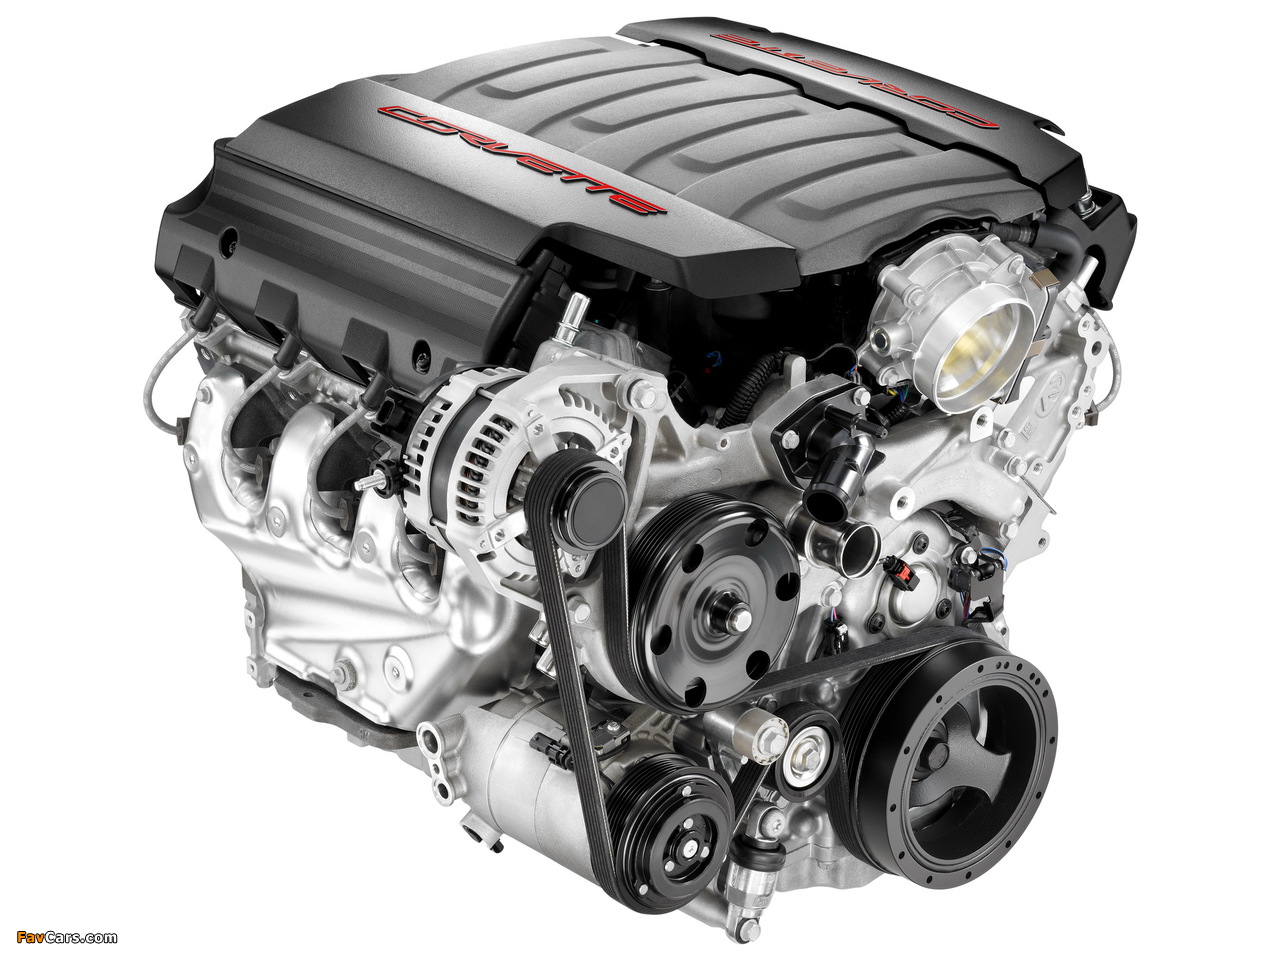 Images of Engines  Corvette LT1 6.2L V-8 VVT DI (1280 x 960)